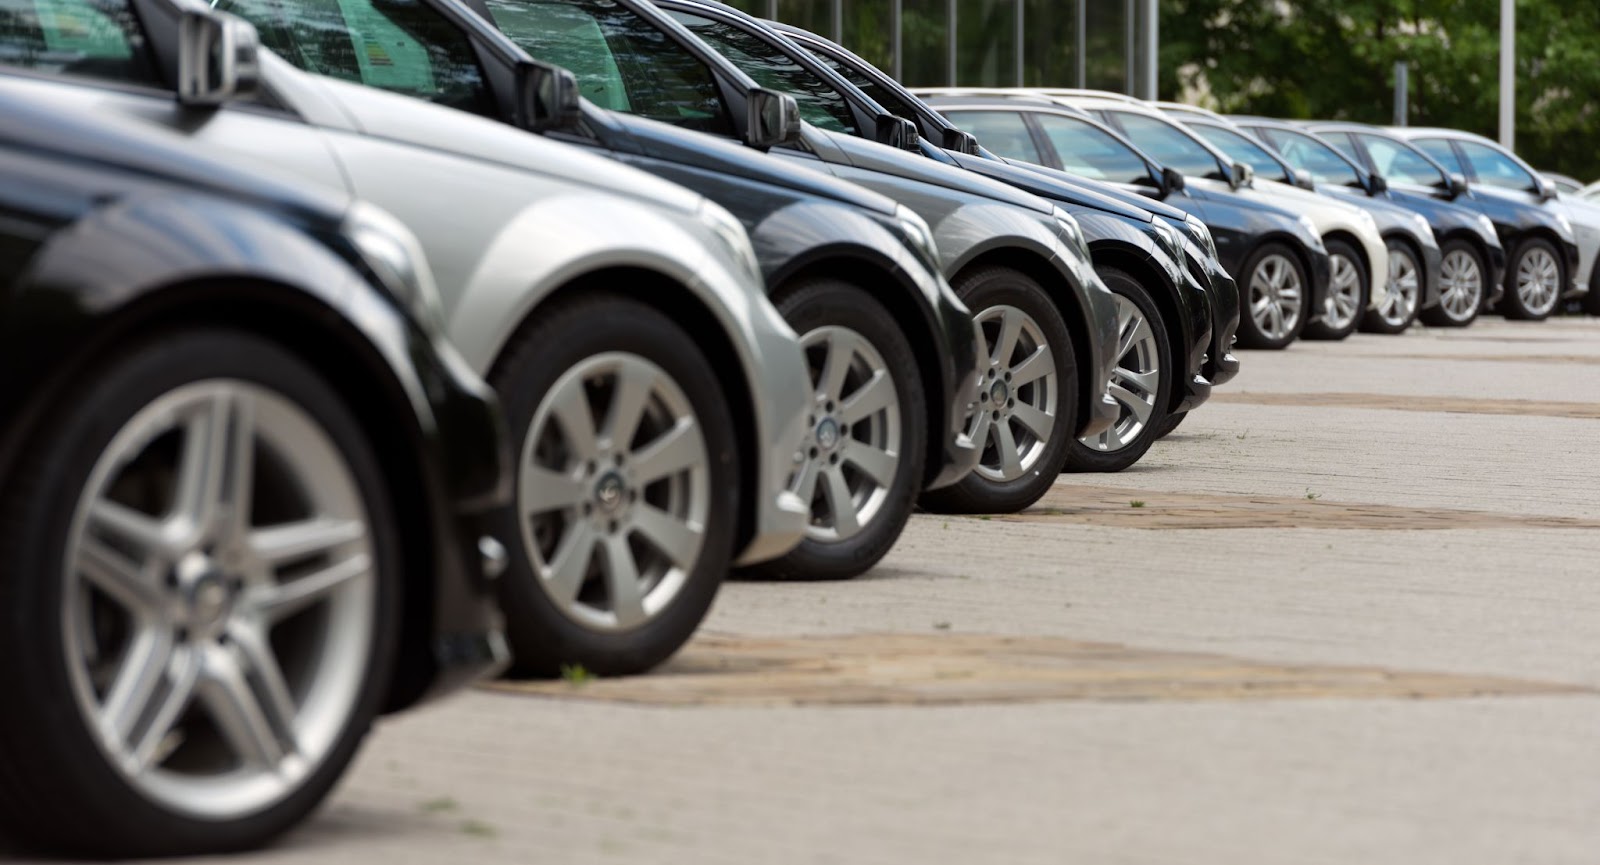 Mengelola Umur Ban Mobil Crossover, Tips Perawatan yang Tepat